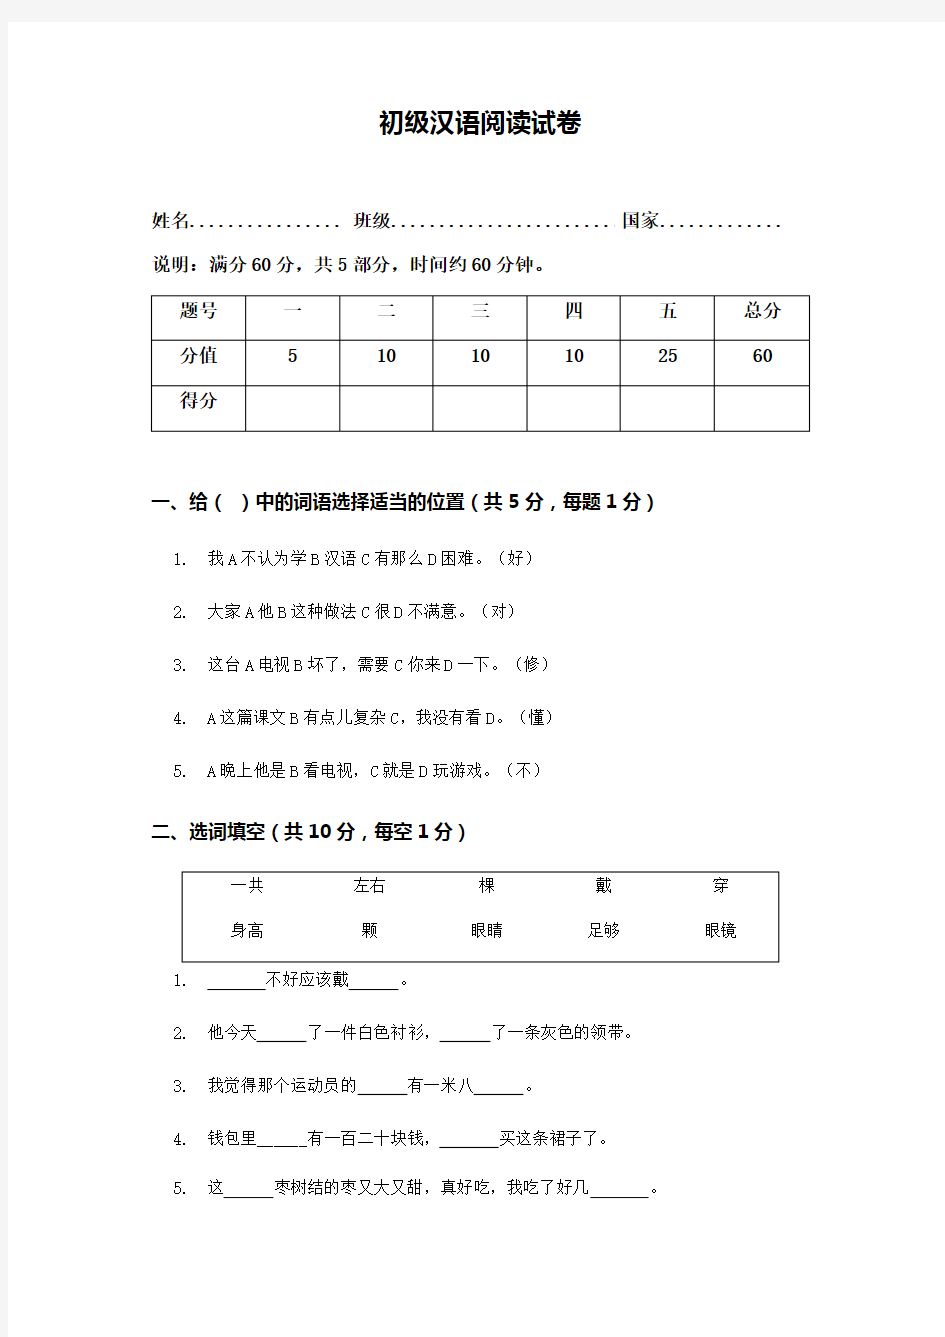 (完整版)初级汉语阅读试卷